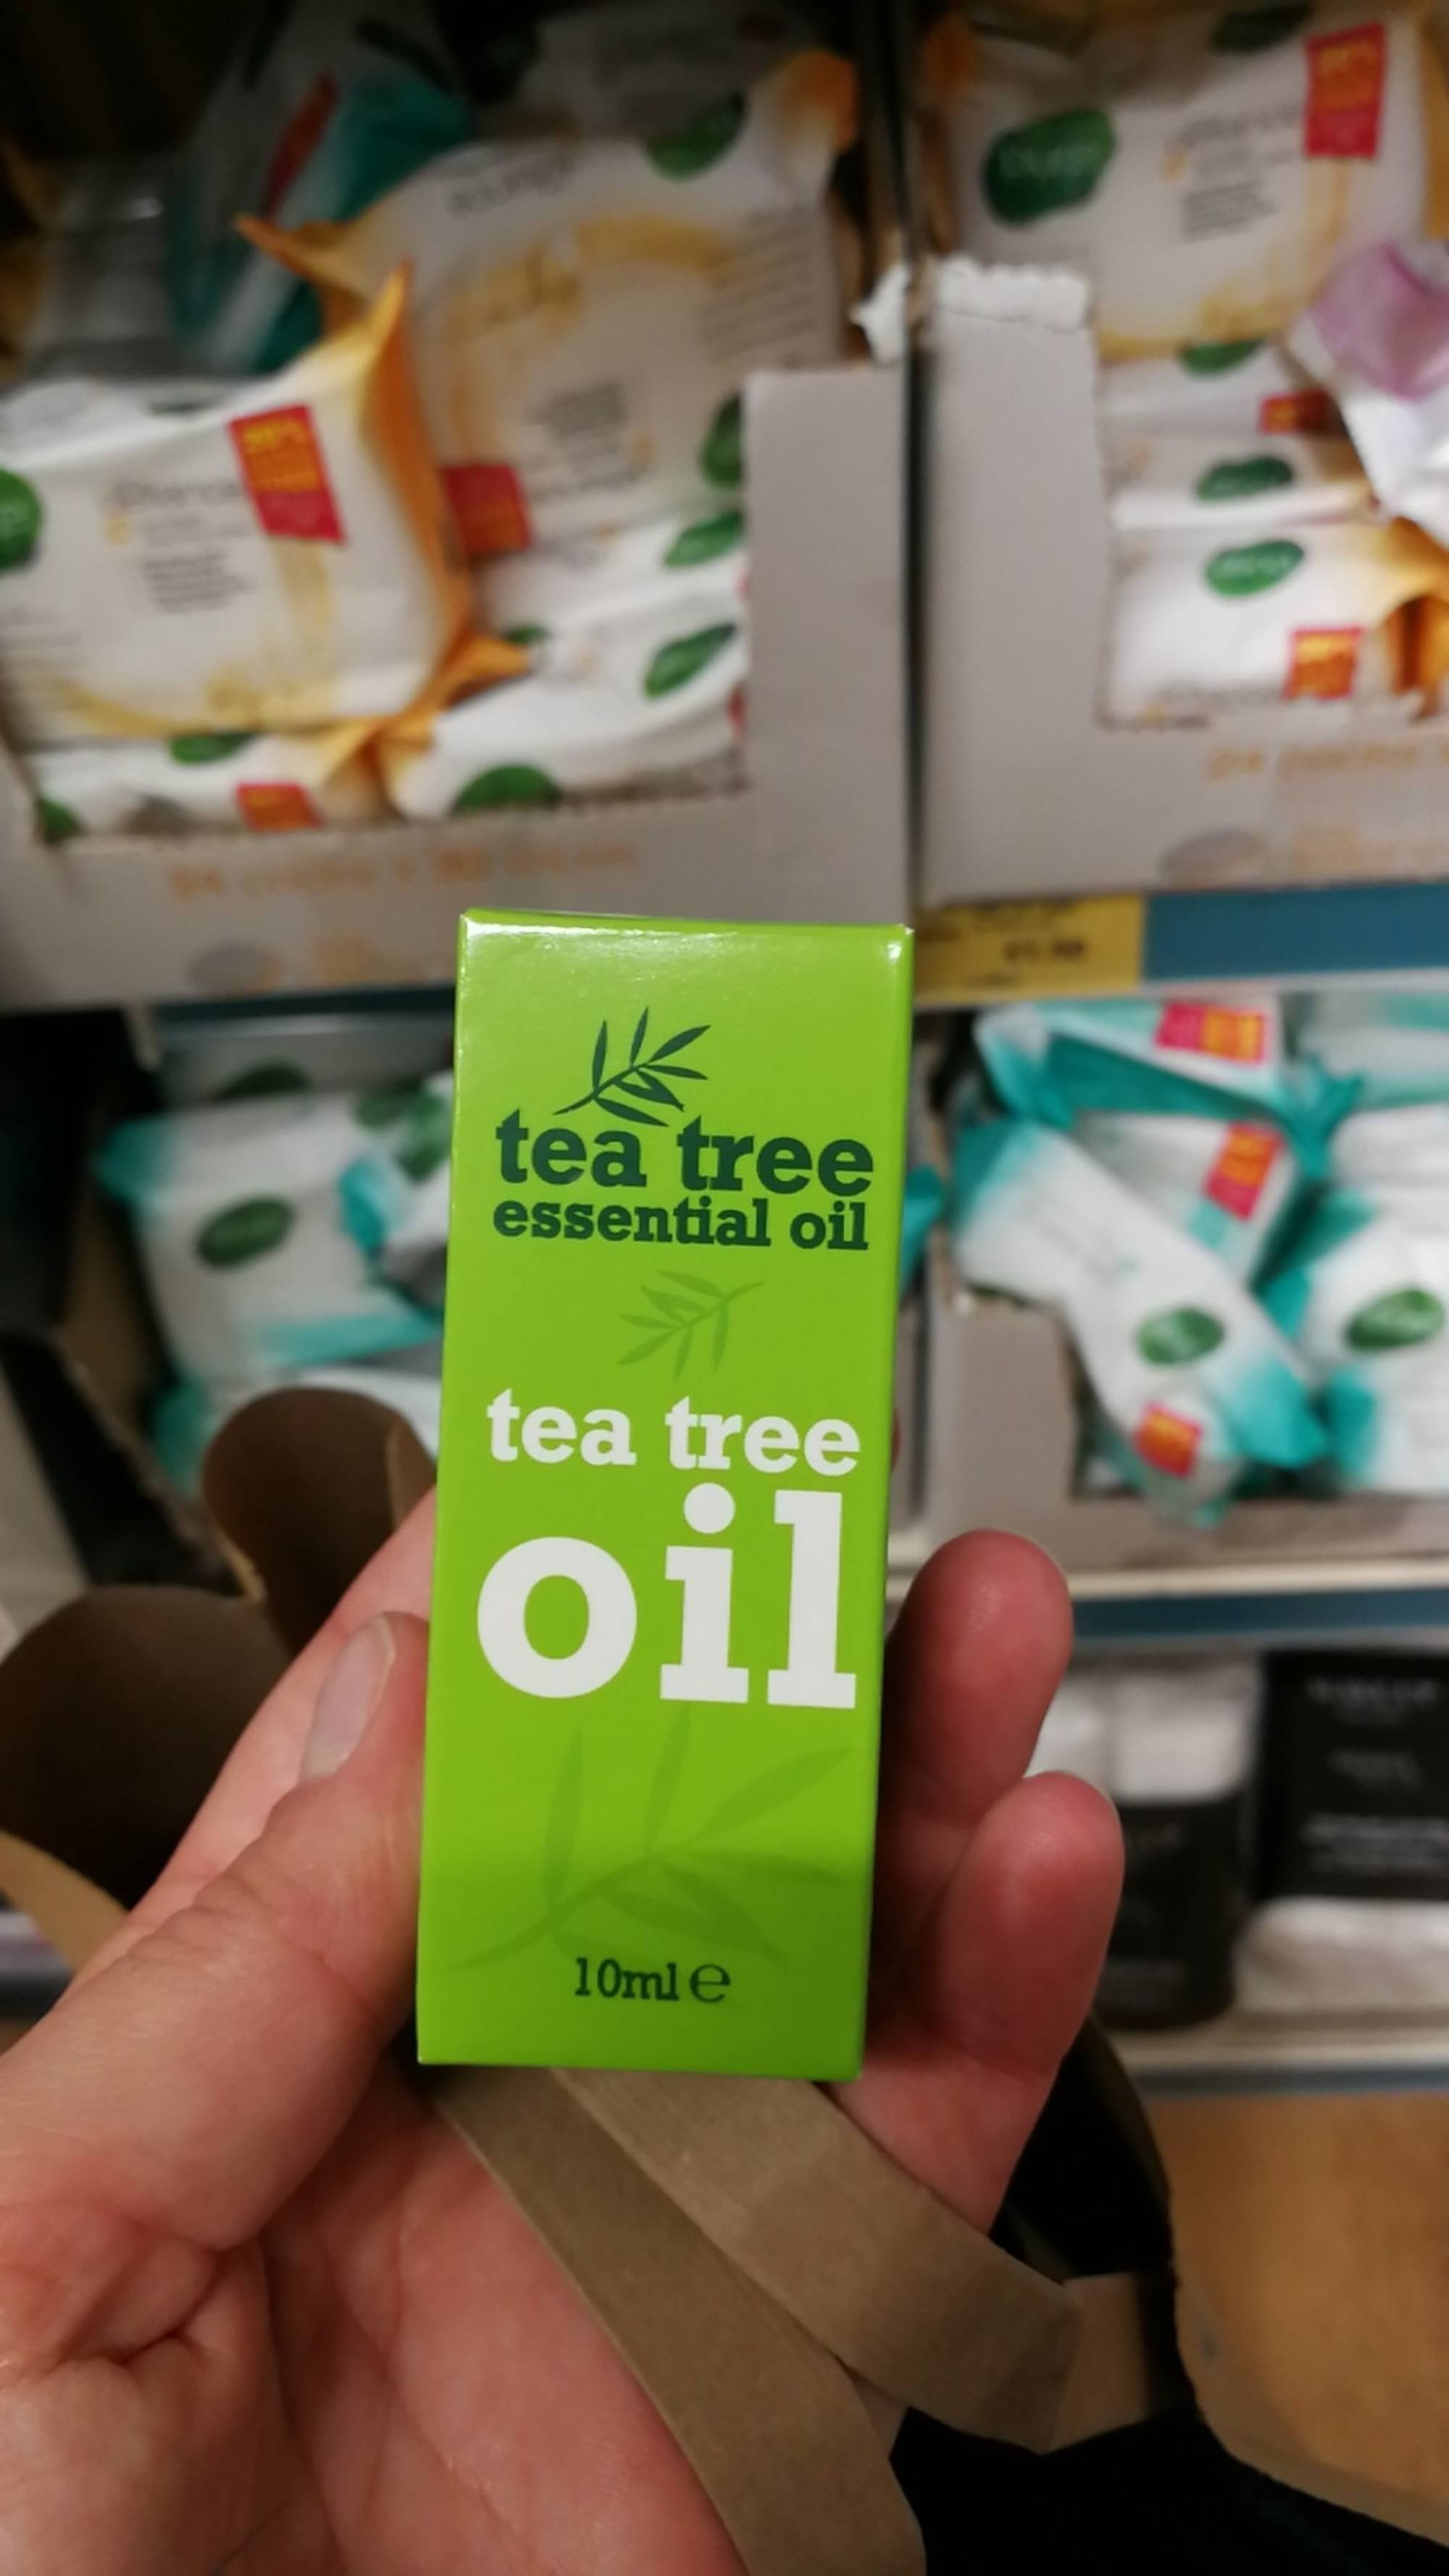 TEA TREE - Essential oil